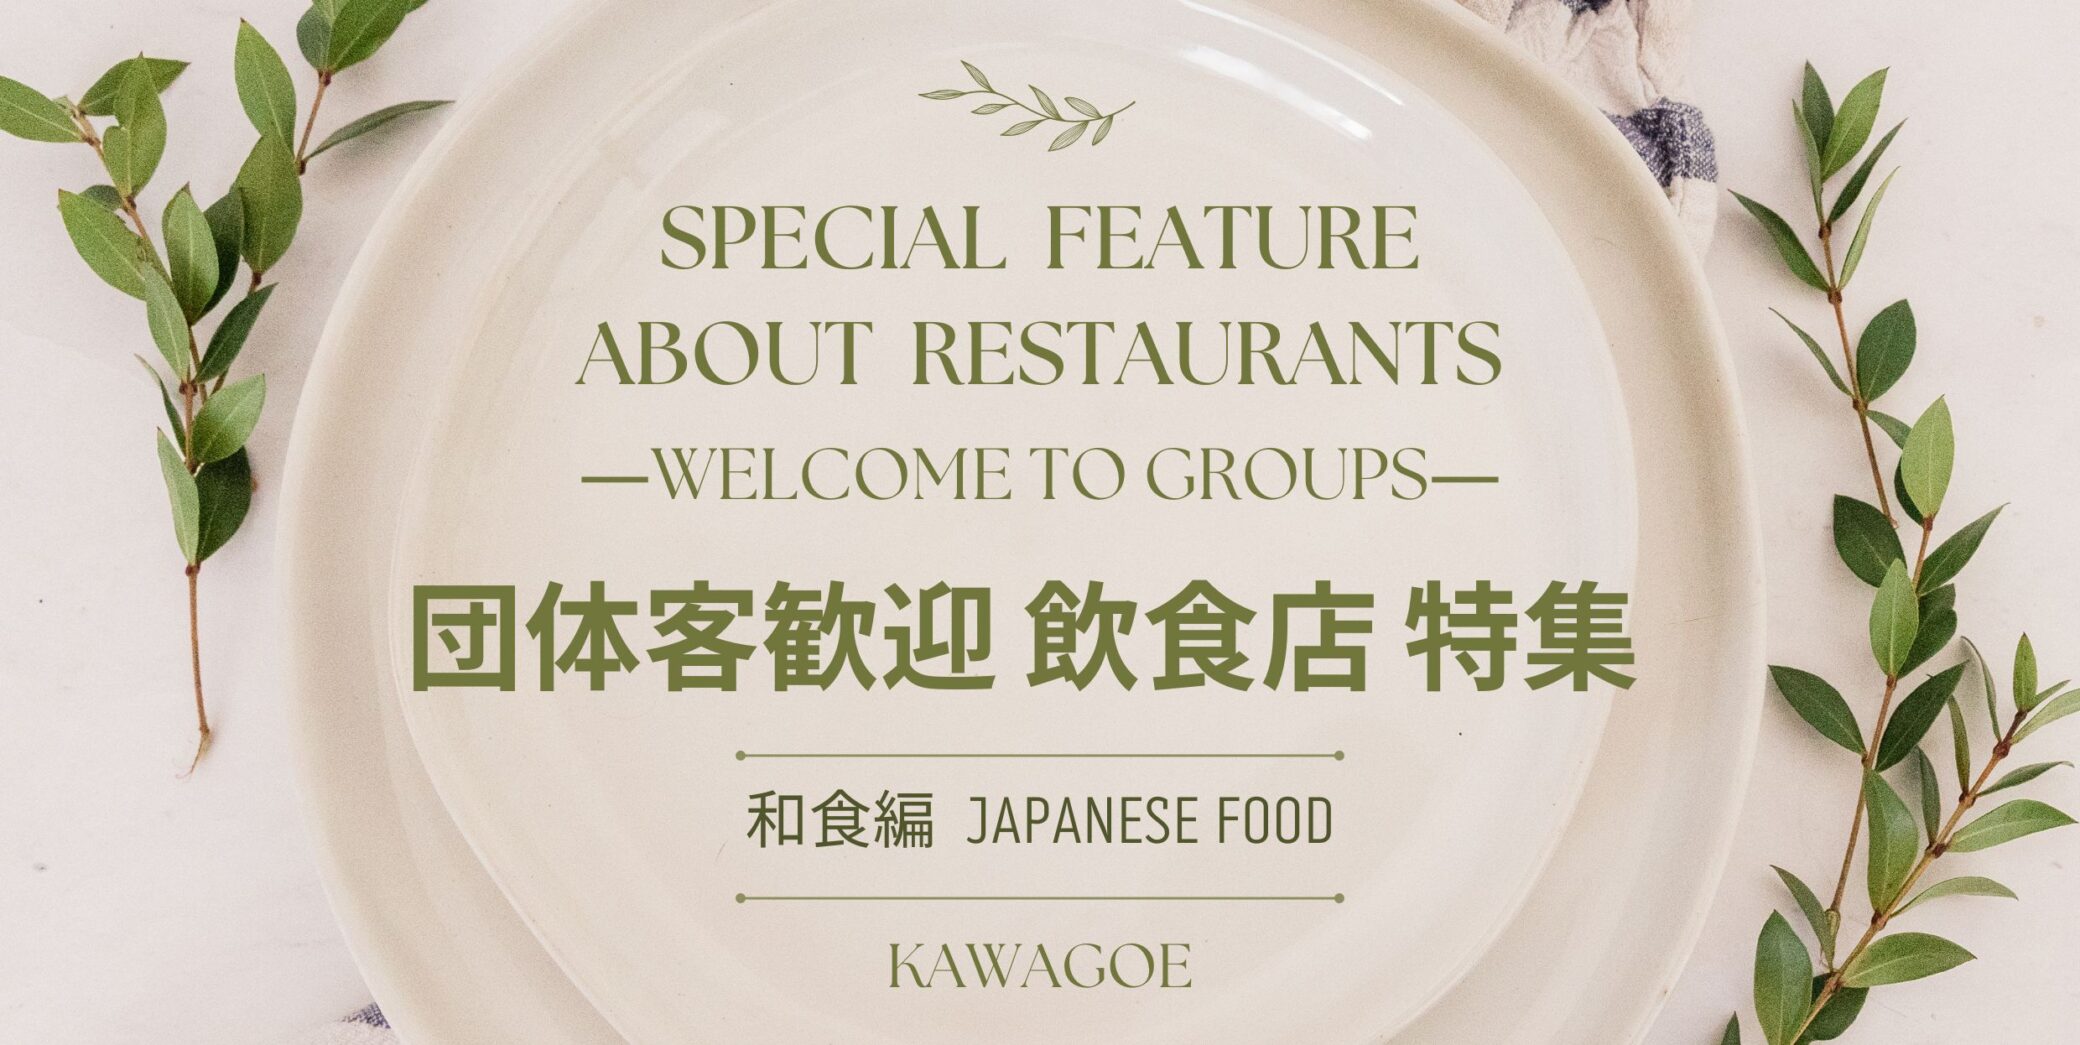 🍴接待團體客人的餐廳特色-日本料理-🎉